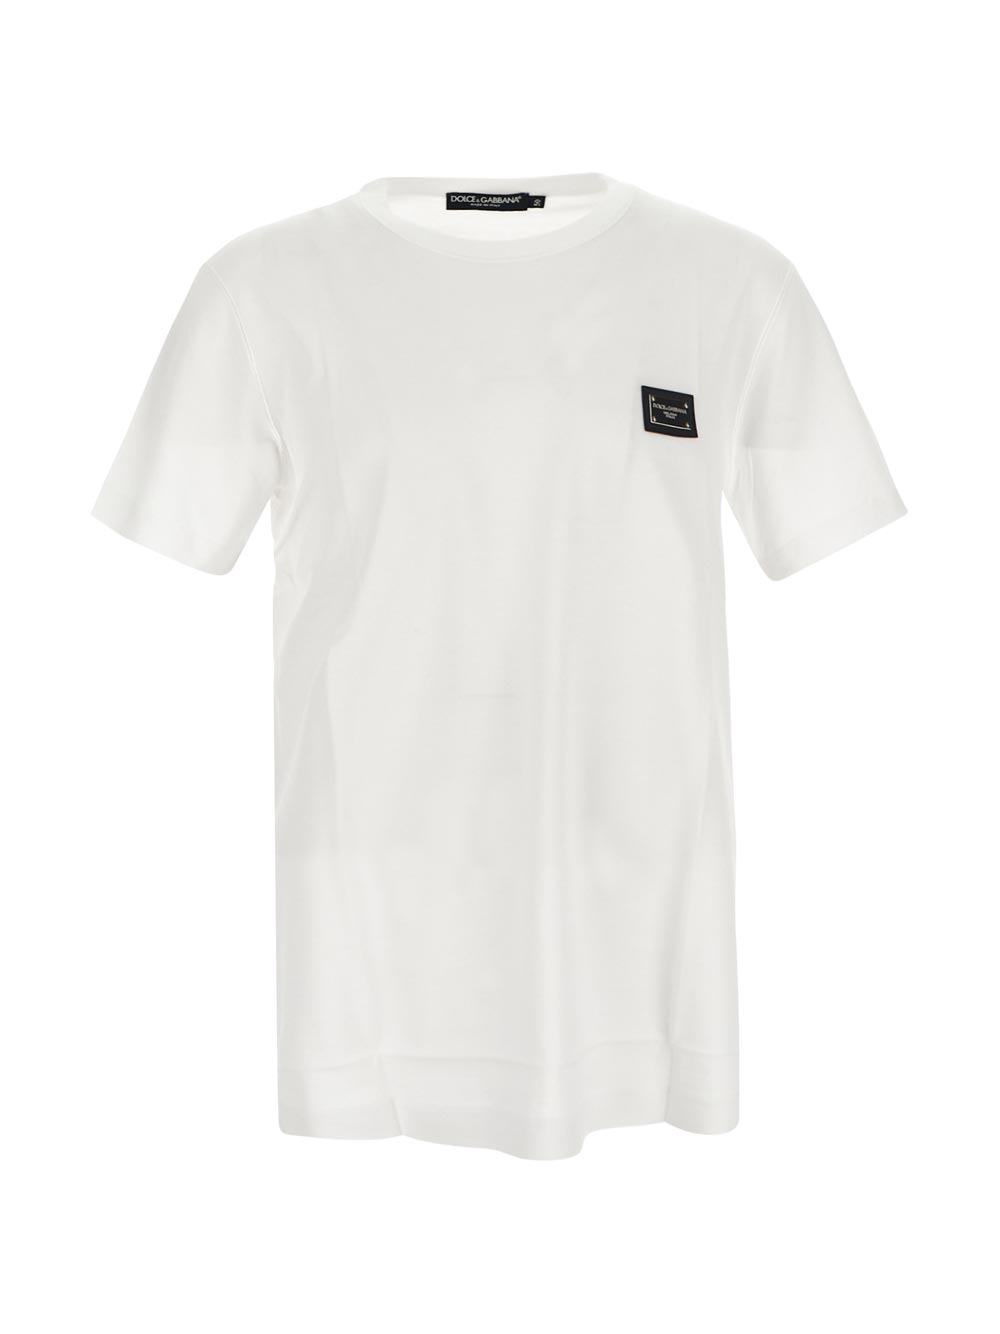 Dolce & Gabbana Logo-Tag Cotton T-Shirt